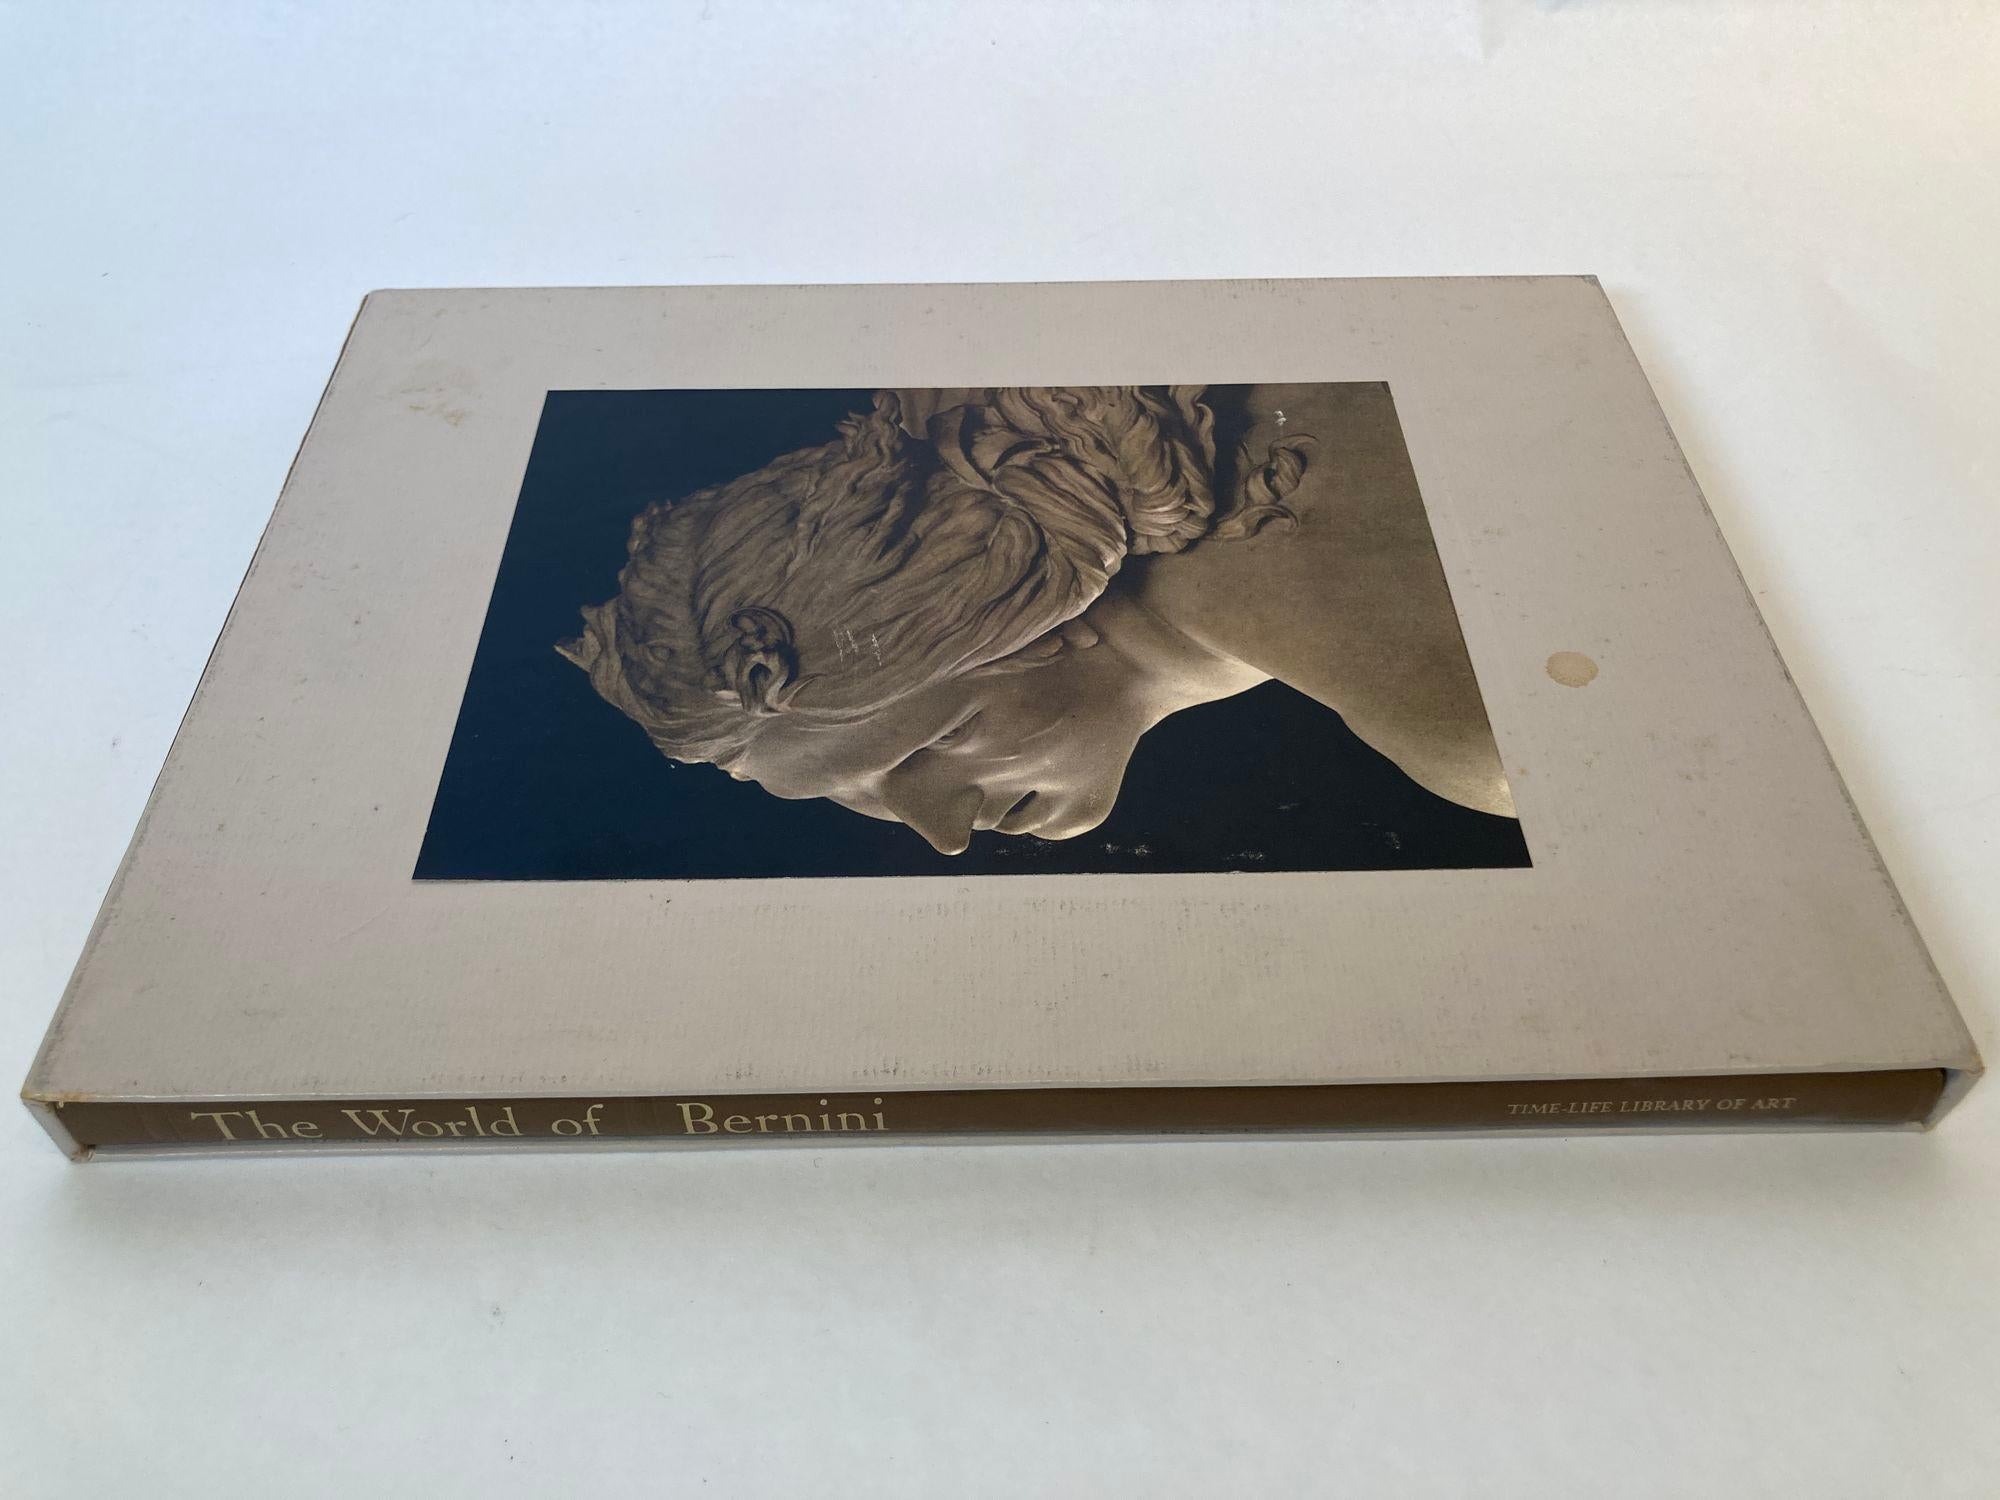 Le monde du Bernini. 1598-1680. Wallace, Robert Publié par Time-Life Books, New York, 1973.
Magnifique livre cartonné Vintage 1973 de la Time Life Library of Art 